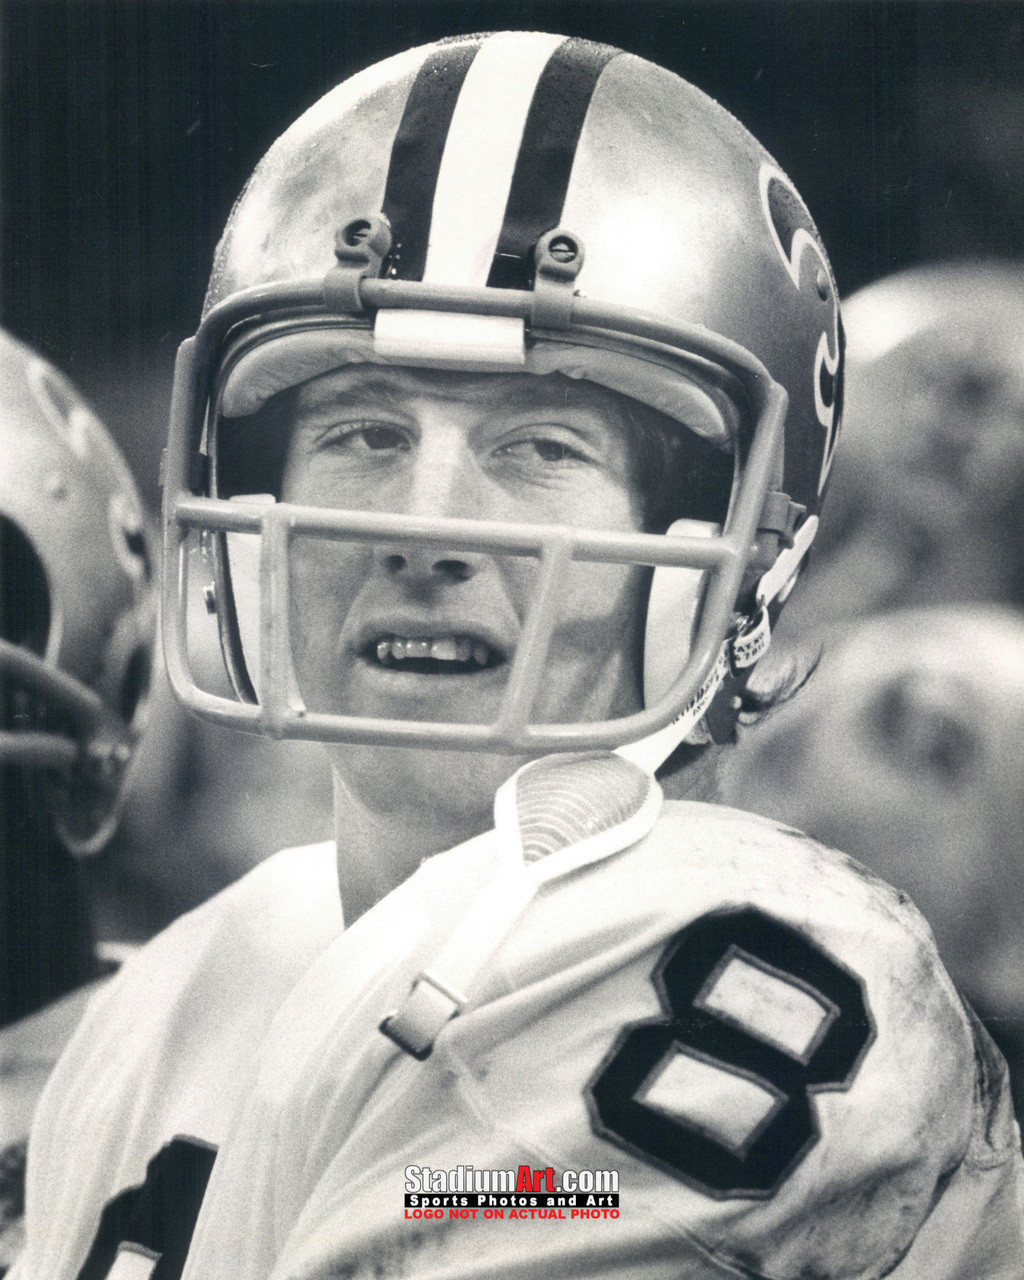 Archie Manning Signed New Orleans Saints Framed 8x10 NFL Photo